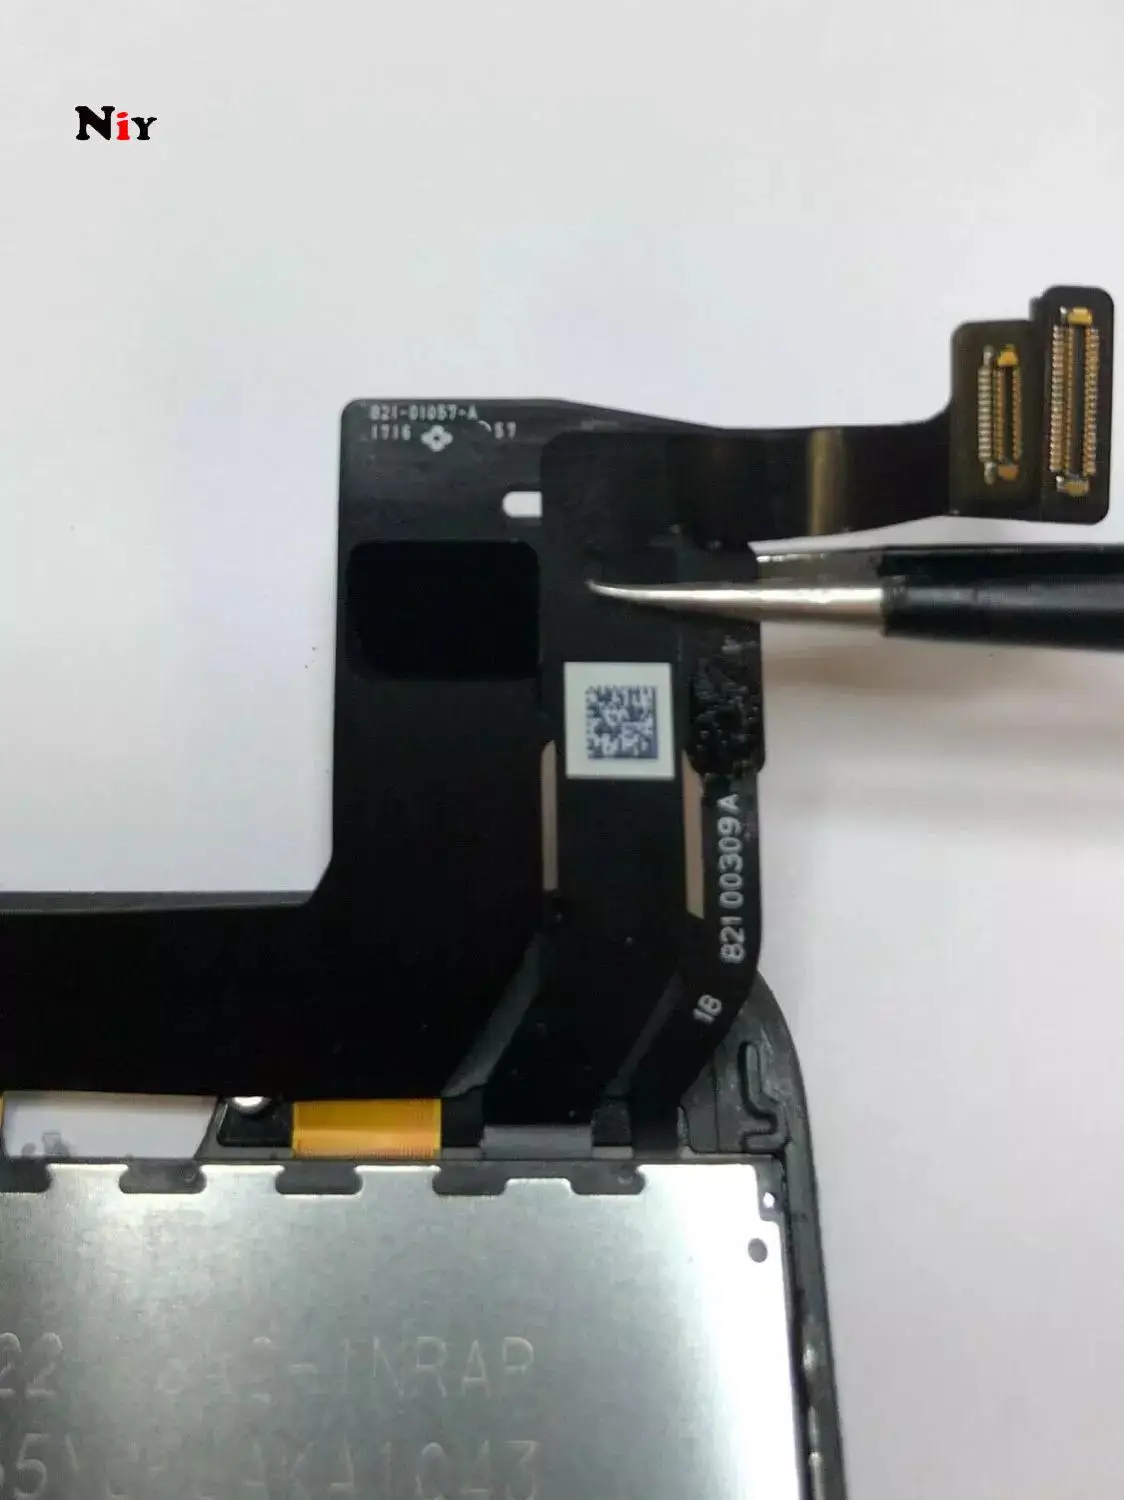 For Oprindelige, Ægte iPhone7 LCD-Retina-Skærm Klasse EN LCD-Skærm Bælte Gratis Reparation Værktøj 2